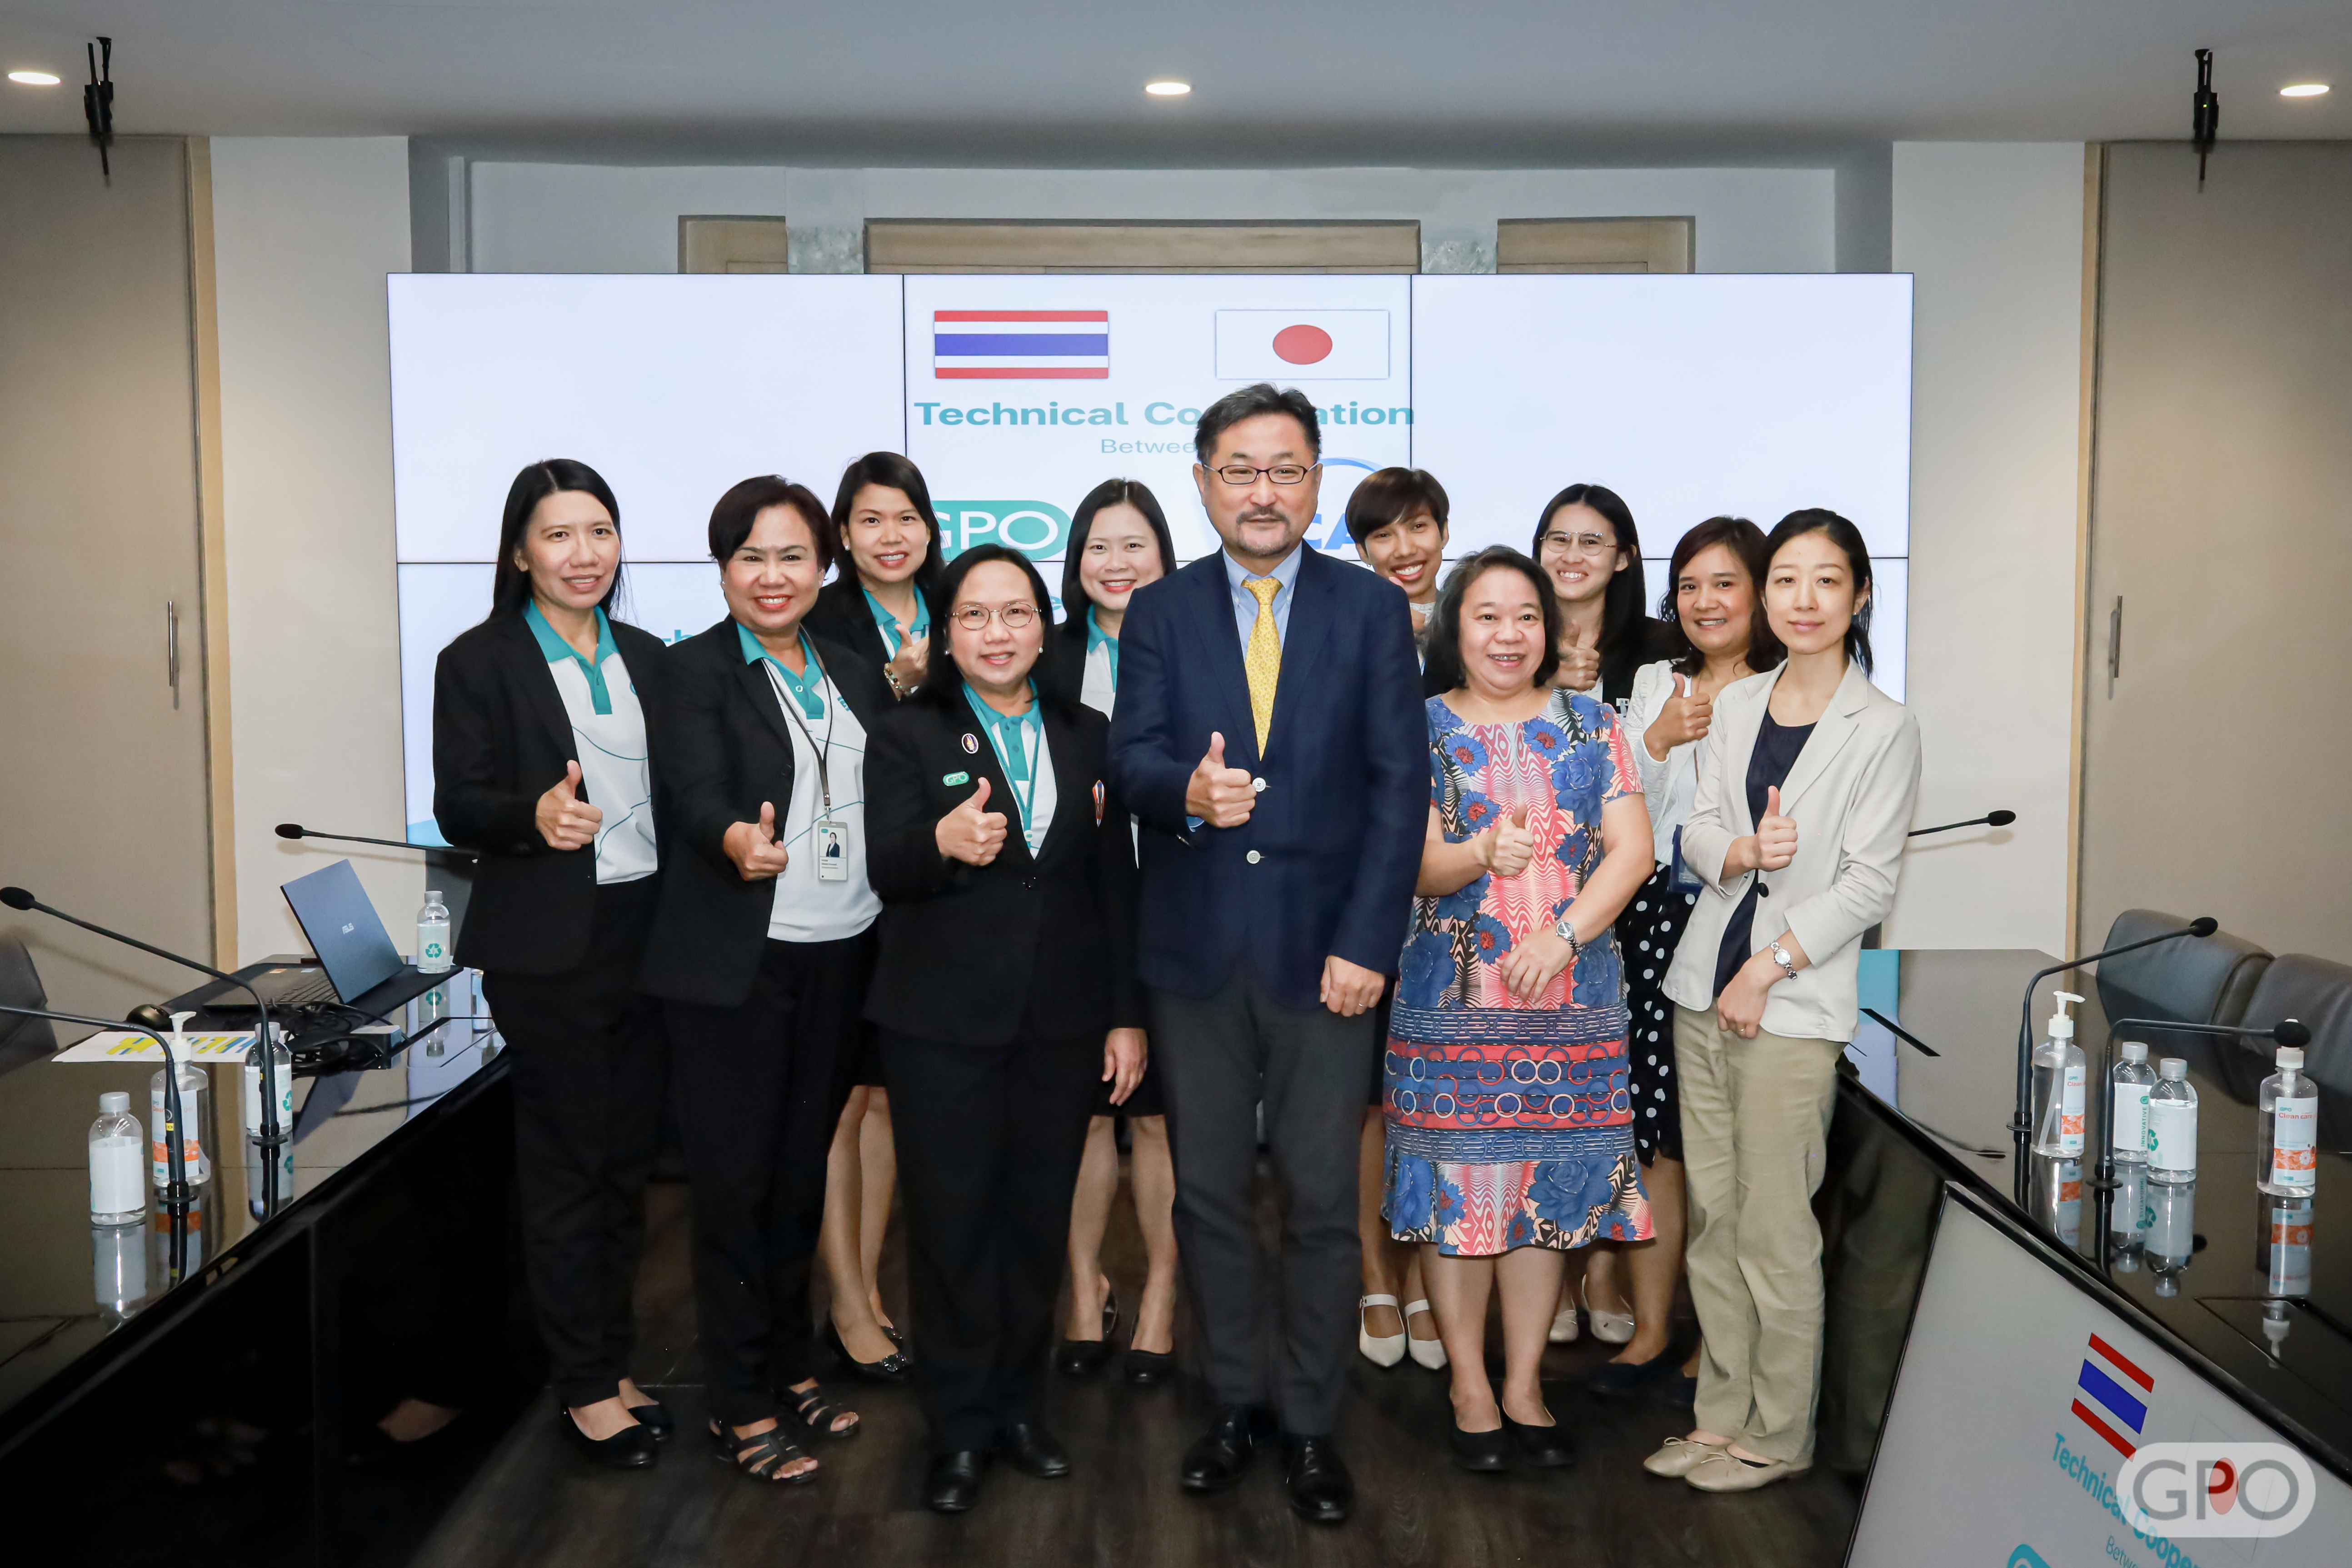 องค์การเภสัชกรรม (GPO) ร่วมมือกับ JICA ผลักดันการผลิตวัคซีนด้วยเทคโนโลยีเซลล์เพาะเลี้ยงของประเทศไทย